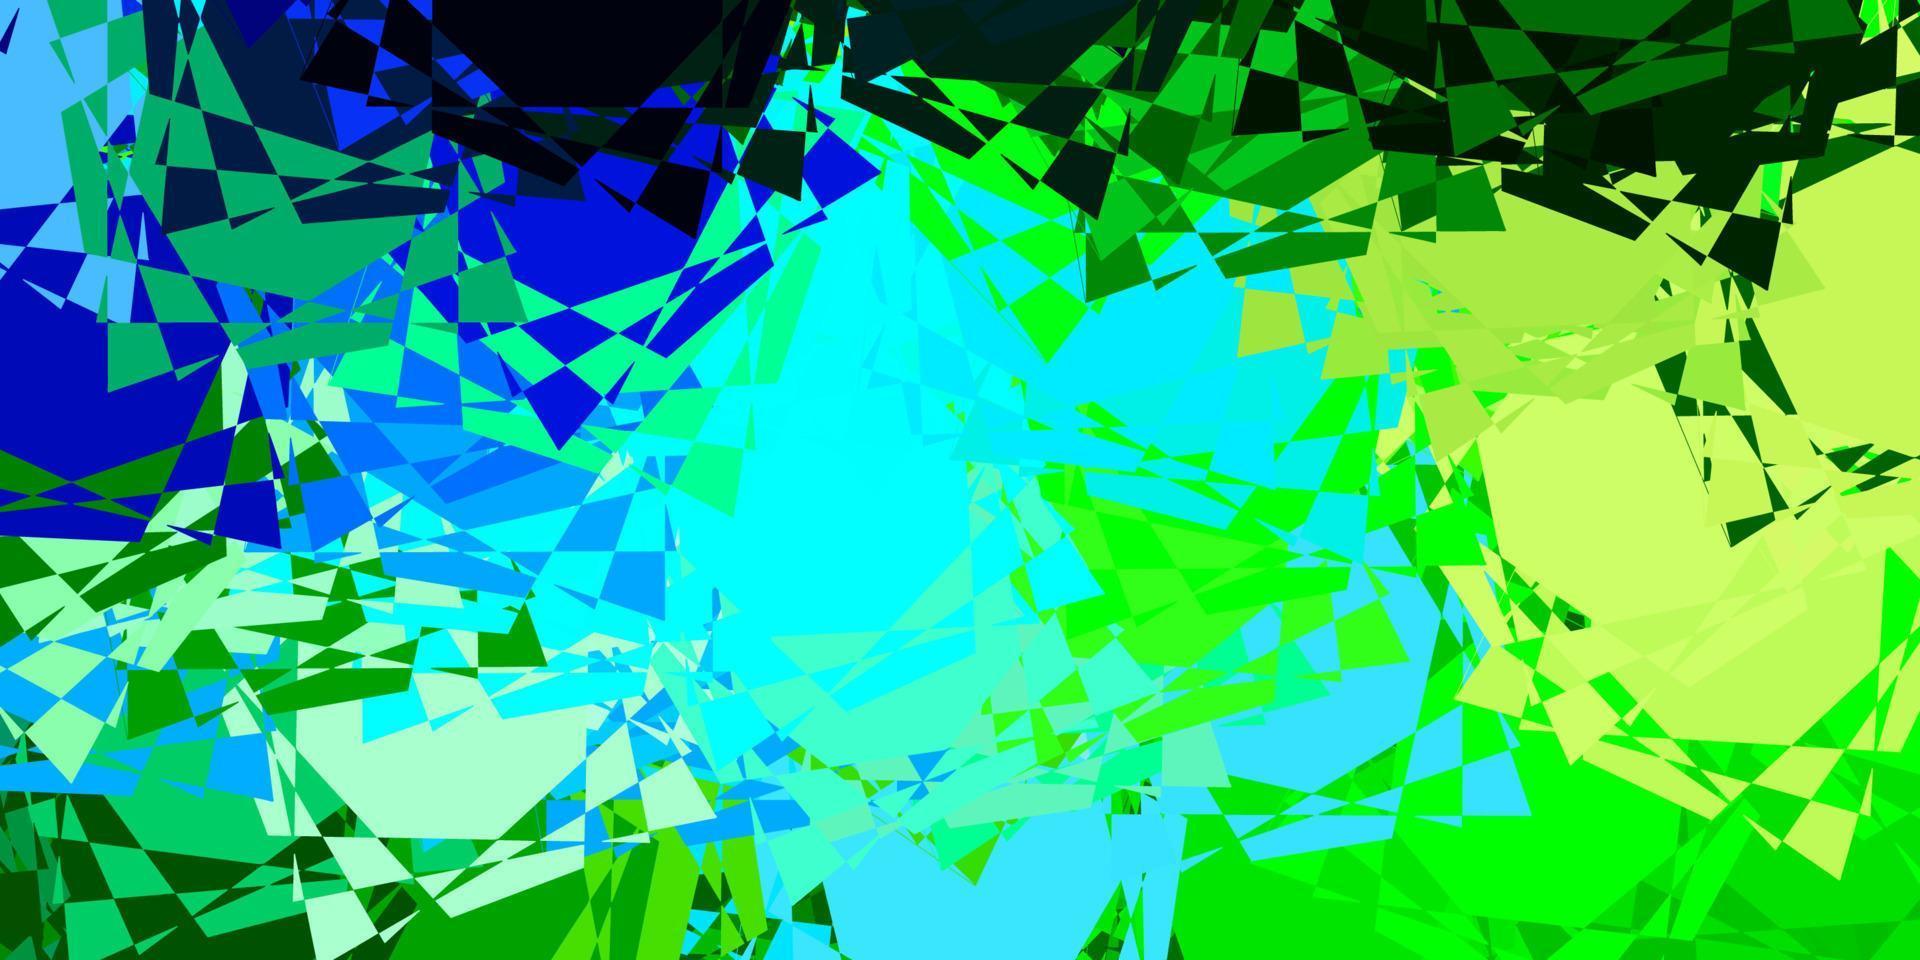 texture de vecteur bleu clair, vert avec des triangles aléatoires.